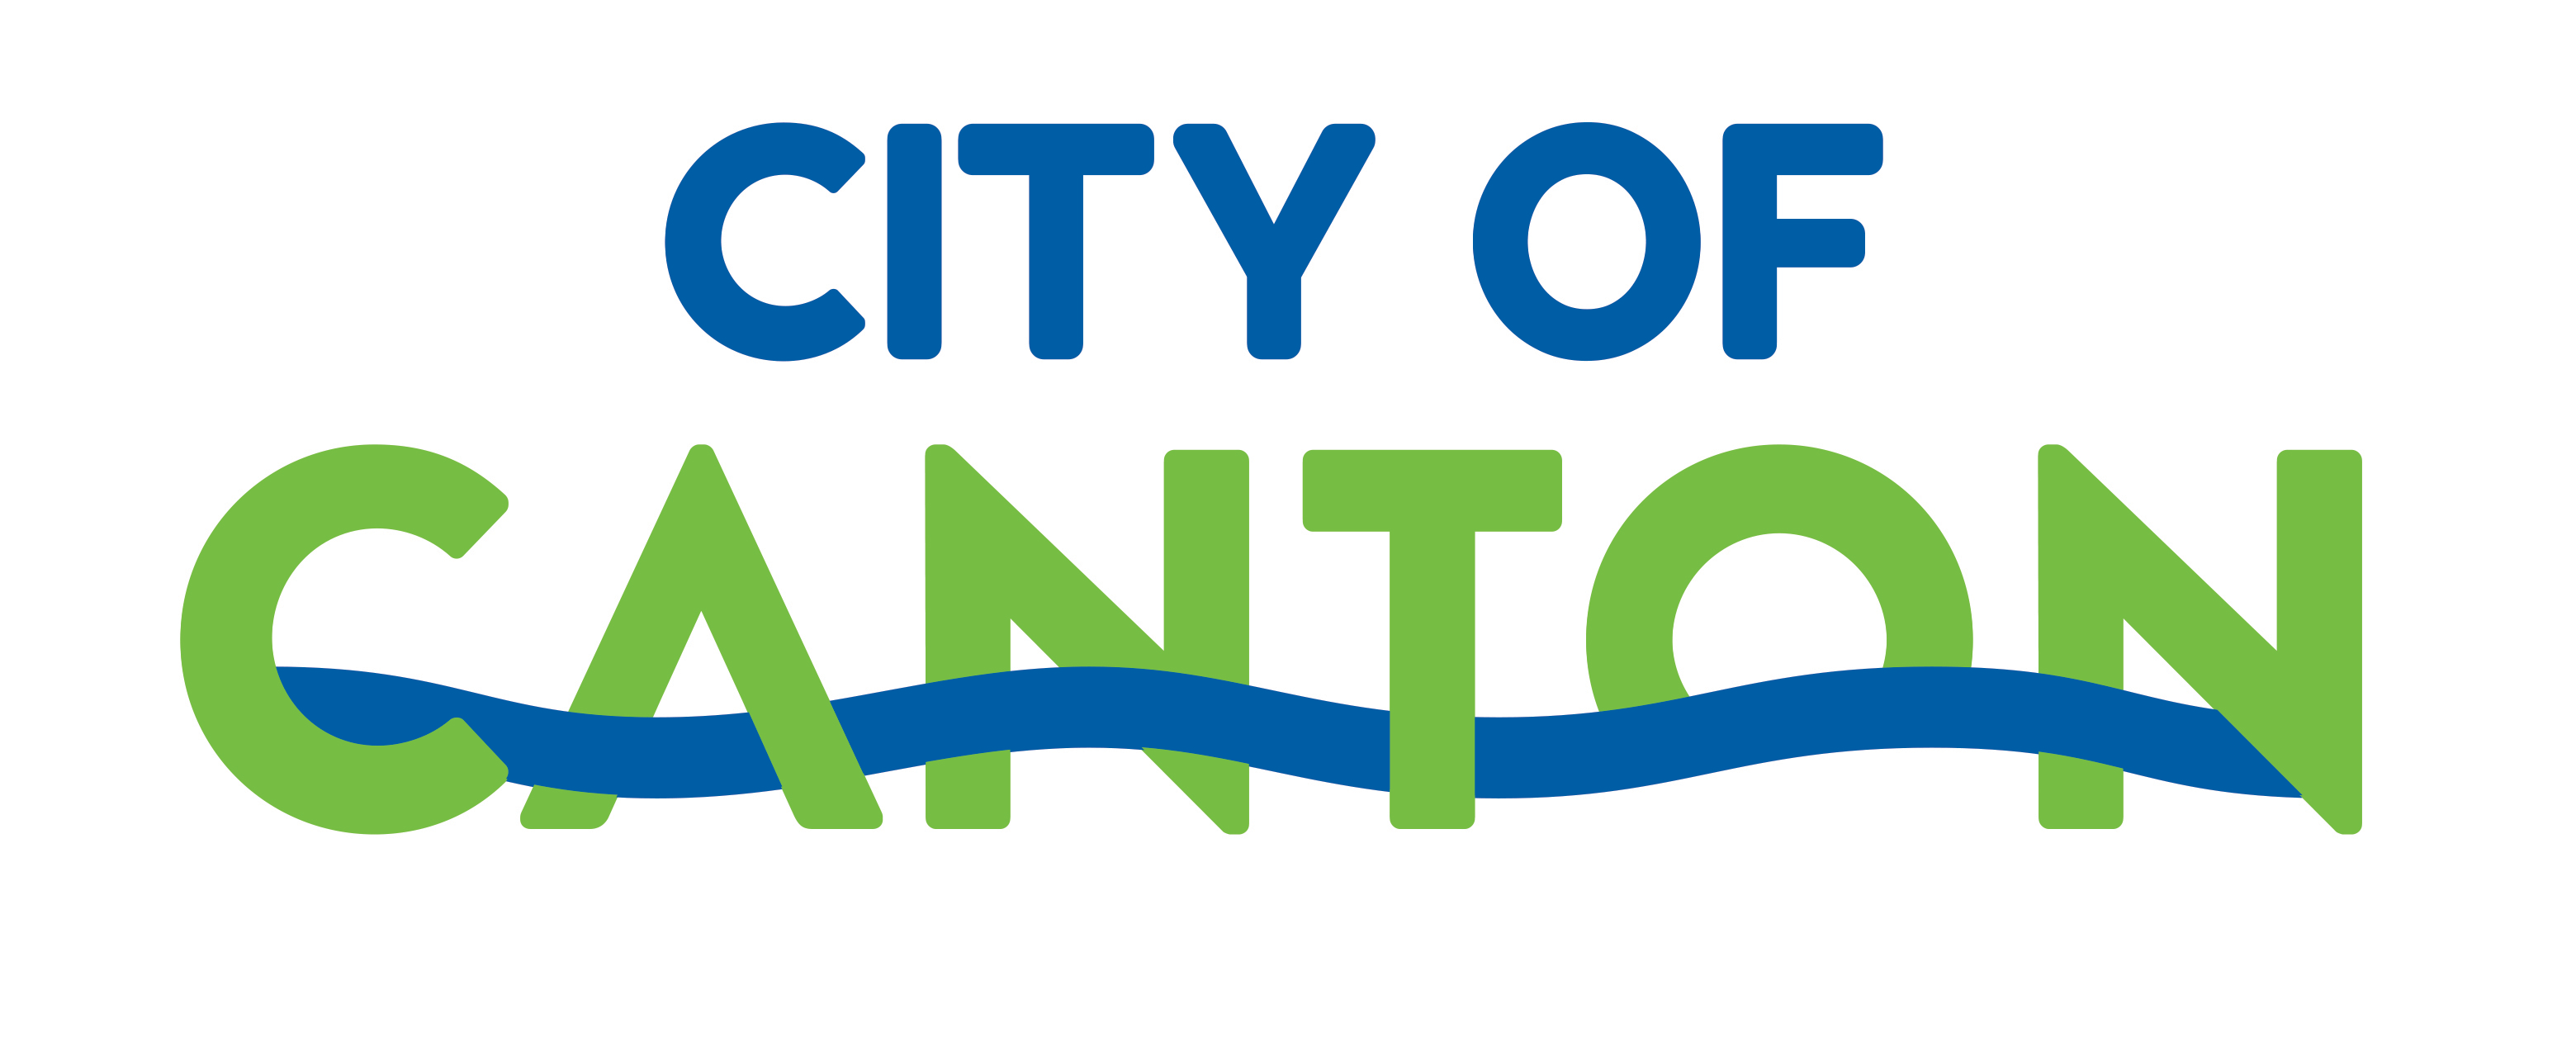 City of Canton logo